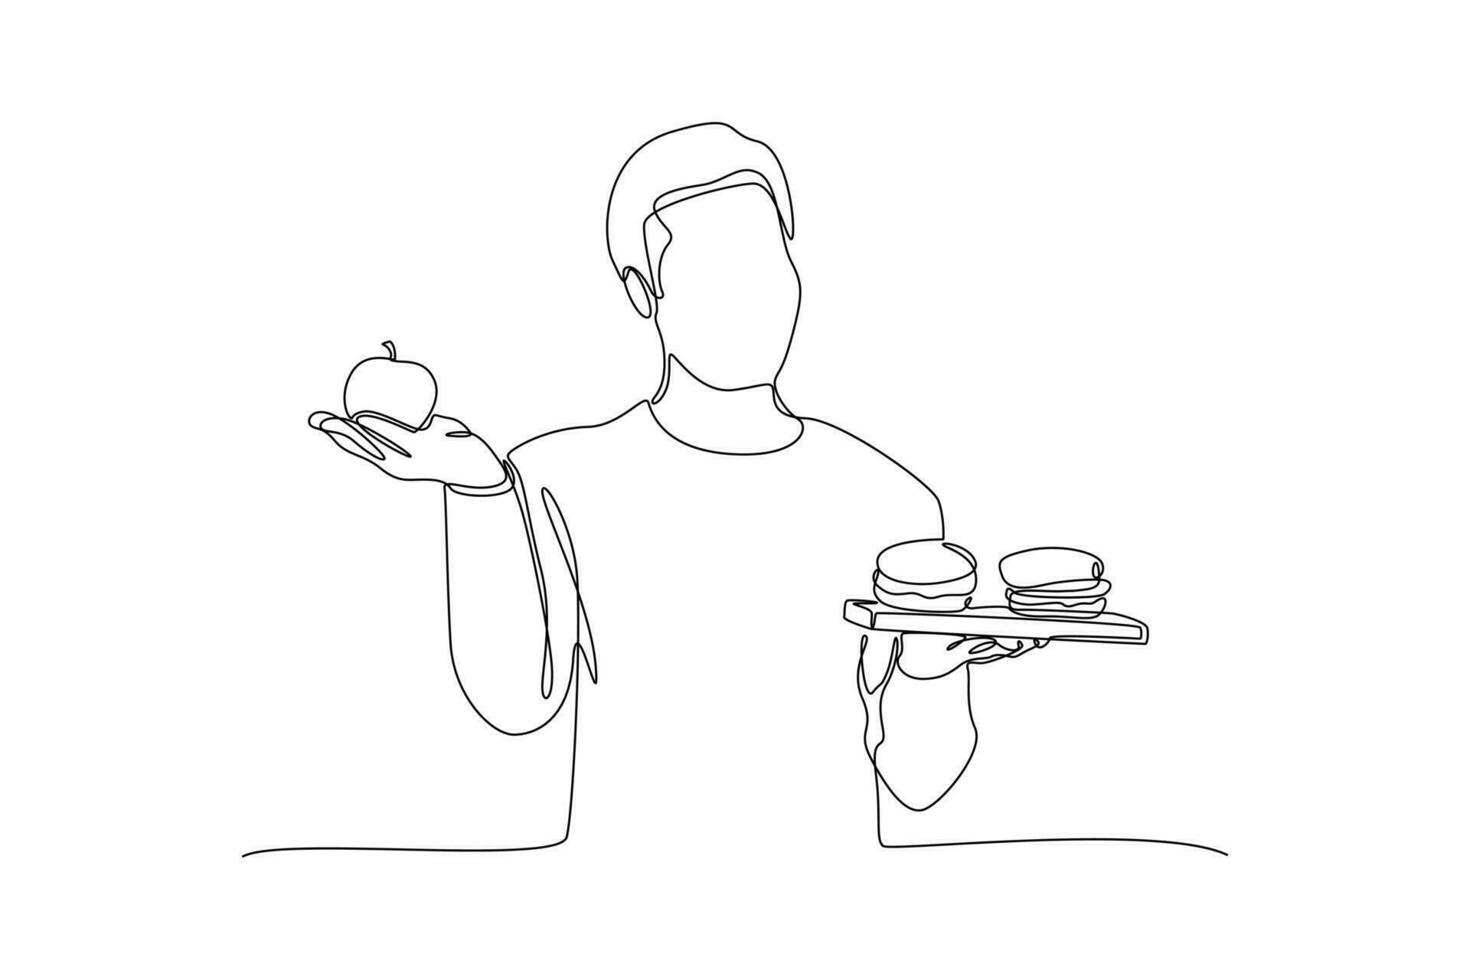 doorlopend een lijn tekening gezond vs ongezond voedsel. voedsel voeding concept. tekening vector illustratie.